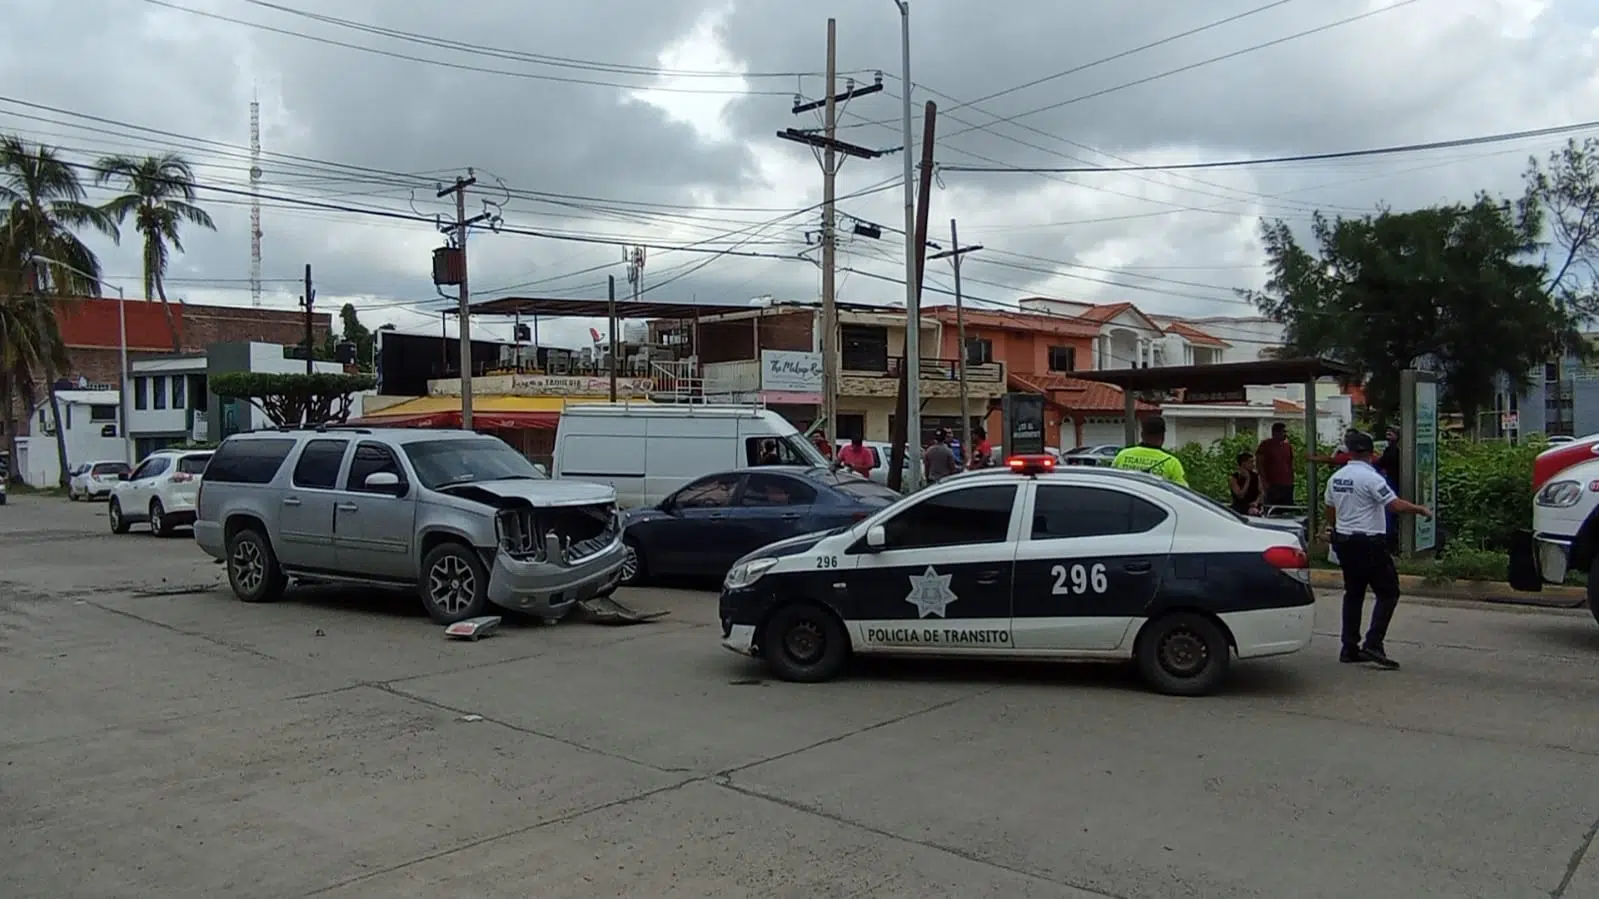 Se “vuela” el alto y choca contra camioneta en la que viajaba un grupo musical en Mazatlán